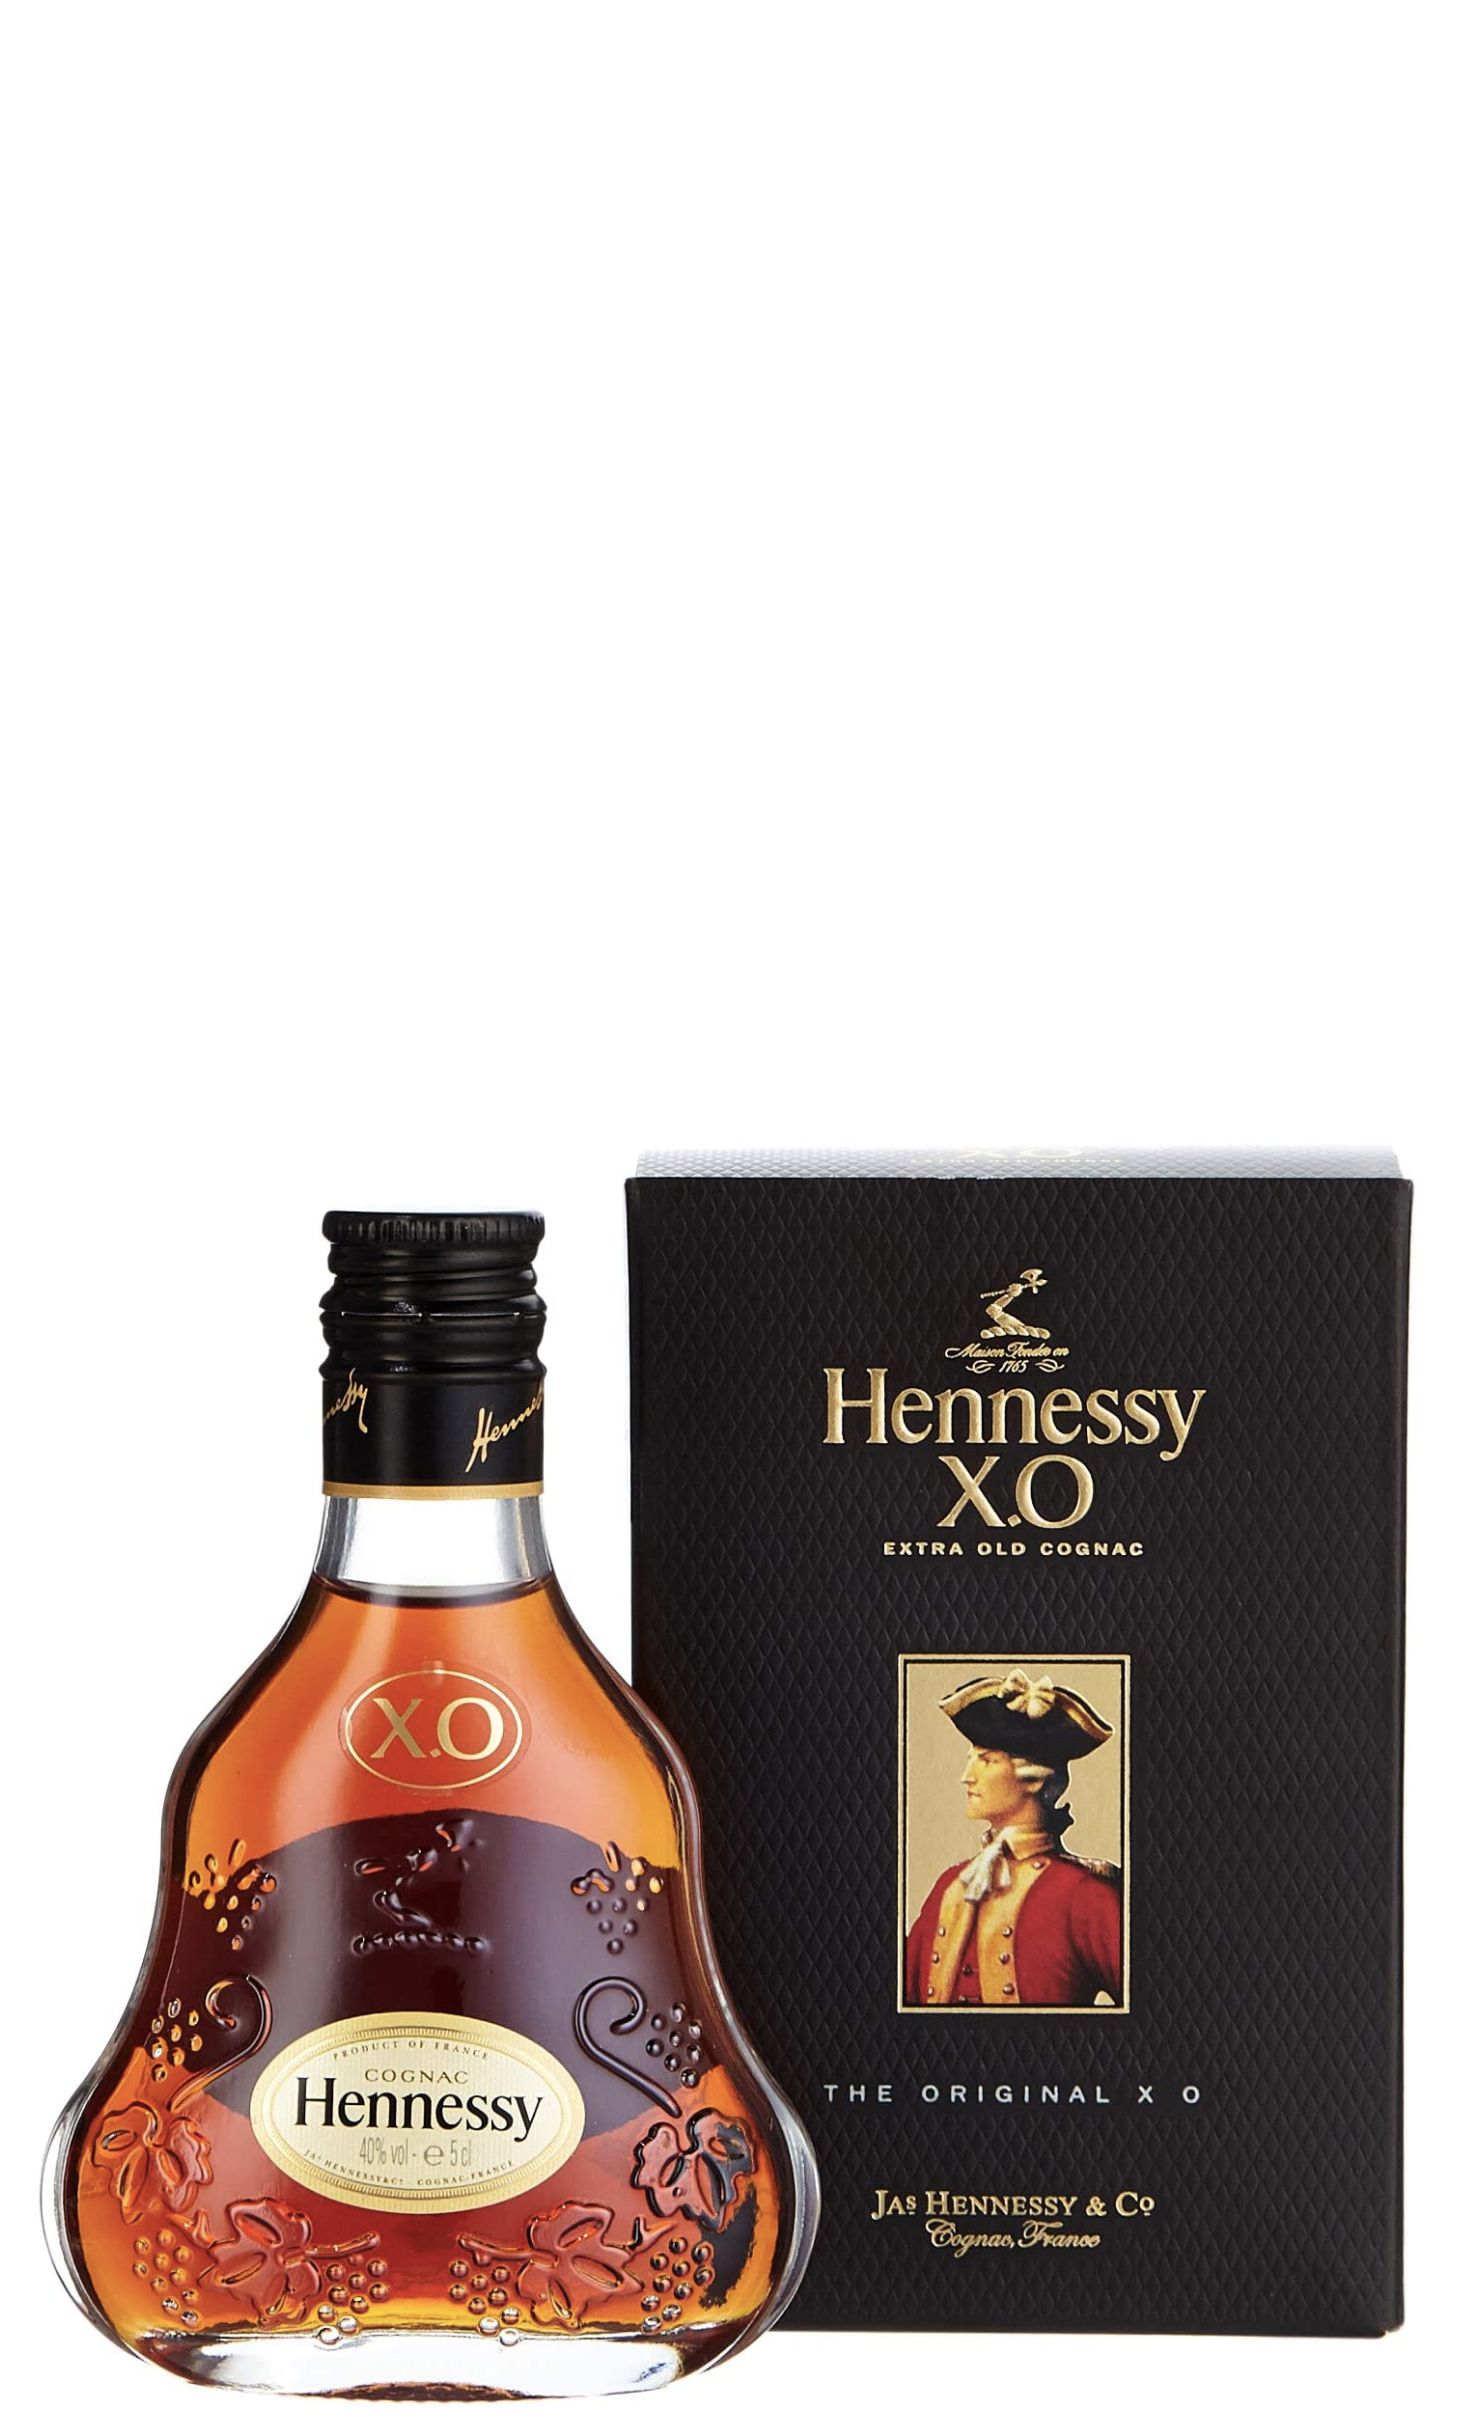 Коньяк хеннесси купить в москве. Коньяк Hennessy 0,5 XO 0.5 Cognac. Коньяк Хеннесси Хо 0.5. Коньяк Hennessy 0.5 Cognac. 0.7Л коньяк Хеннесси Хо.